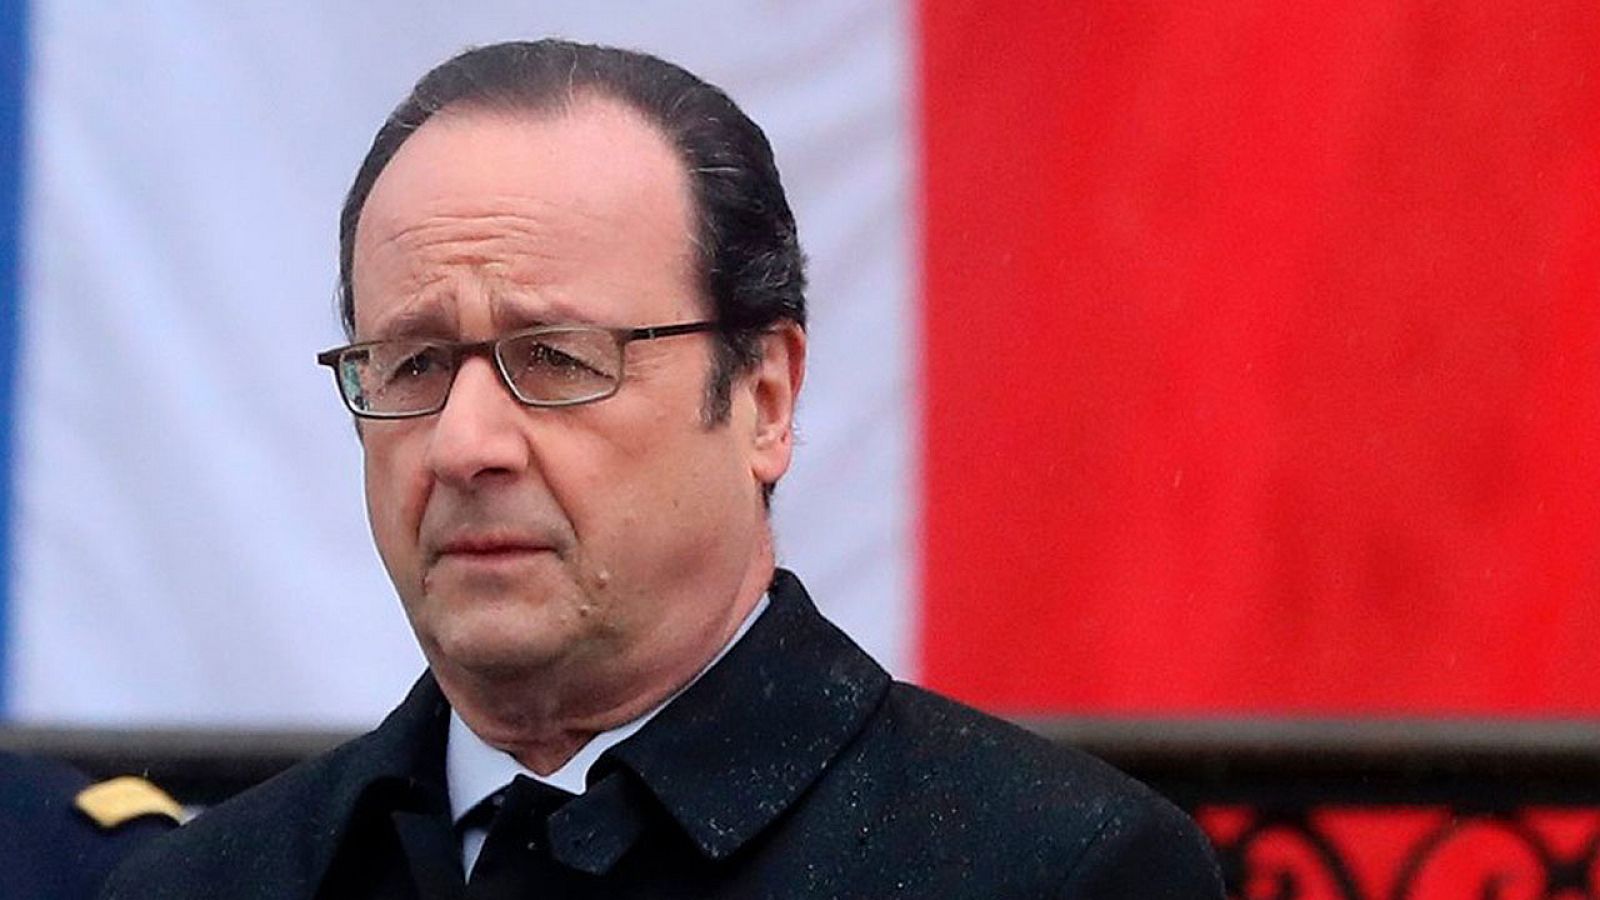 El presidente francés Francçois Hollande en un acto oficial en París